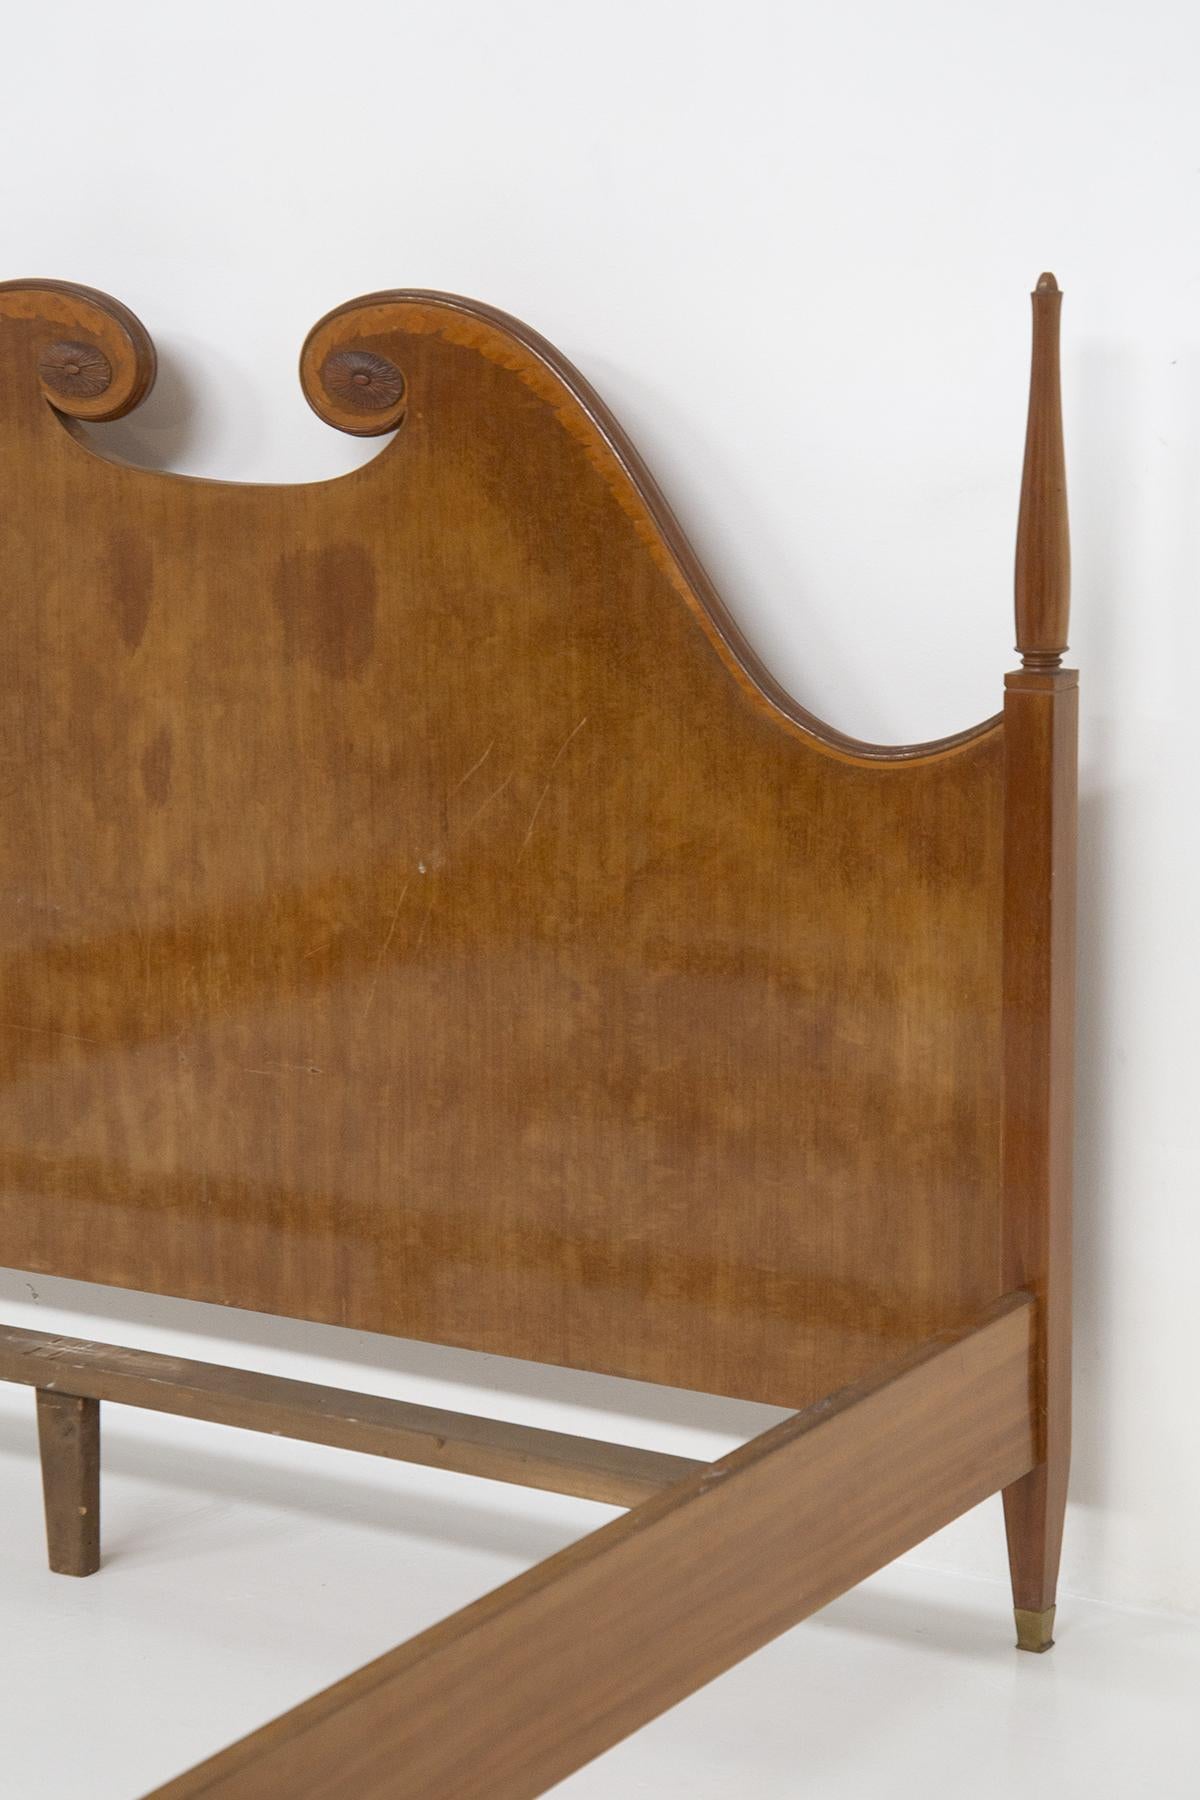 Beau cadre d'un lit double conçu par le grand Paolo Buffa dans les années 1950 de belle fabrication italienne.
Le lit est entièrement fabriqué en bois massif et durable, le cadre est très impressionnant et distinctif.
Il est soutenu par quatre